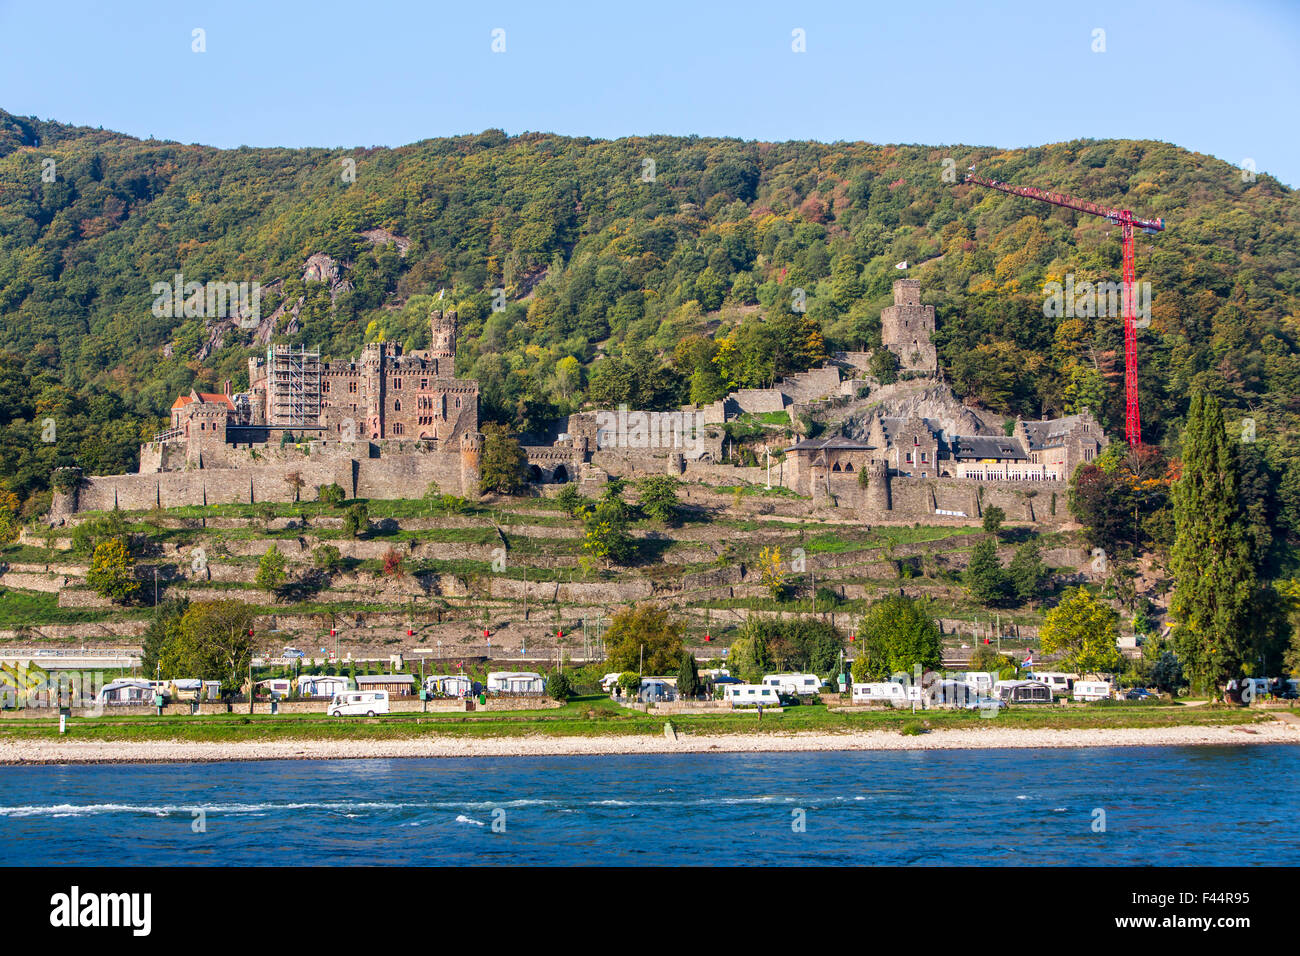 Burg Reichenstein, castle Trechtingshausen with, Rheingau, the UNESCO World Heritage Upper Middle Rhine Valley Stock Photo